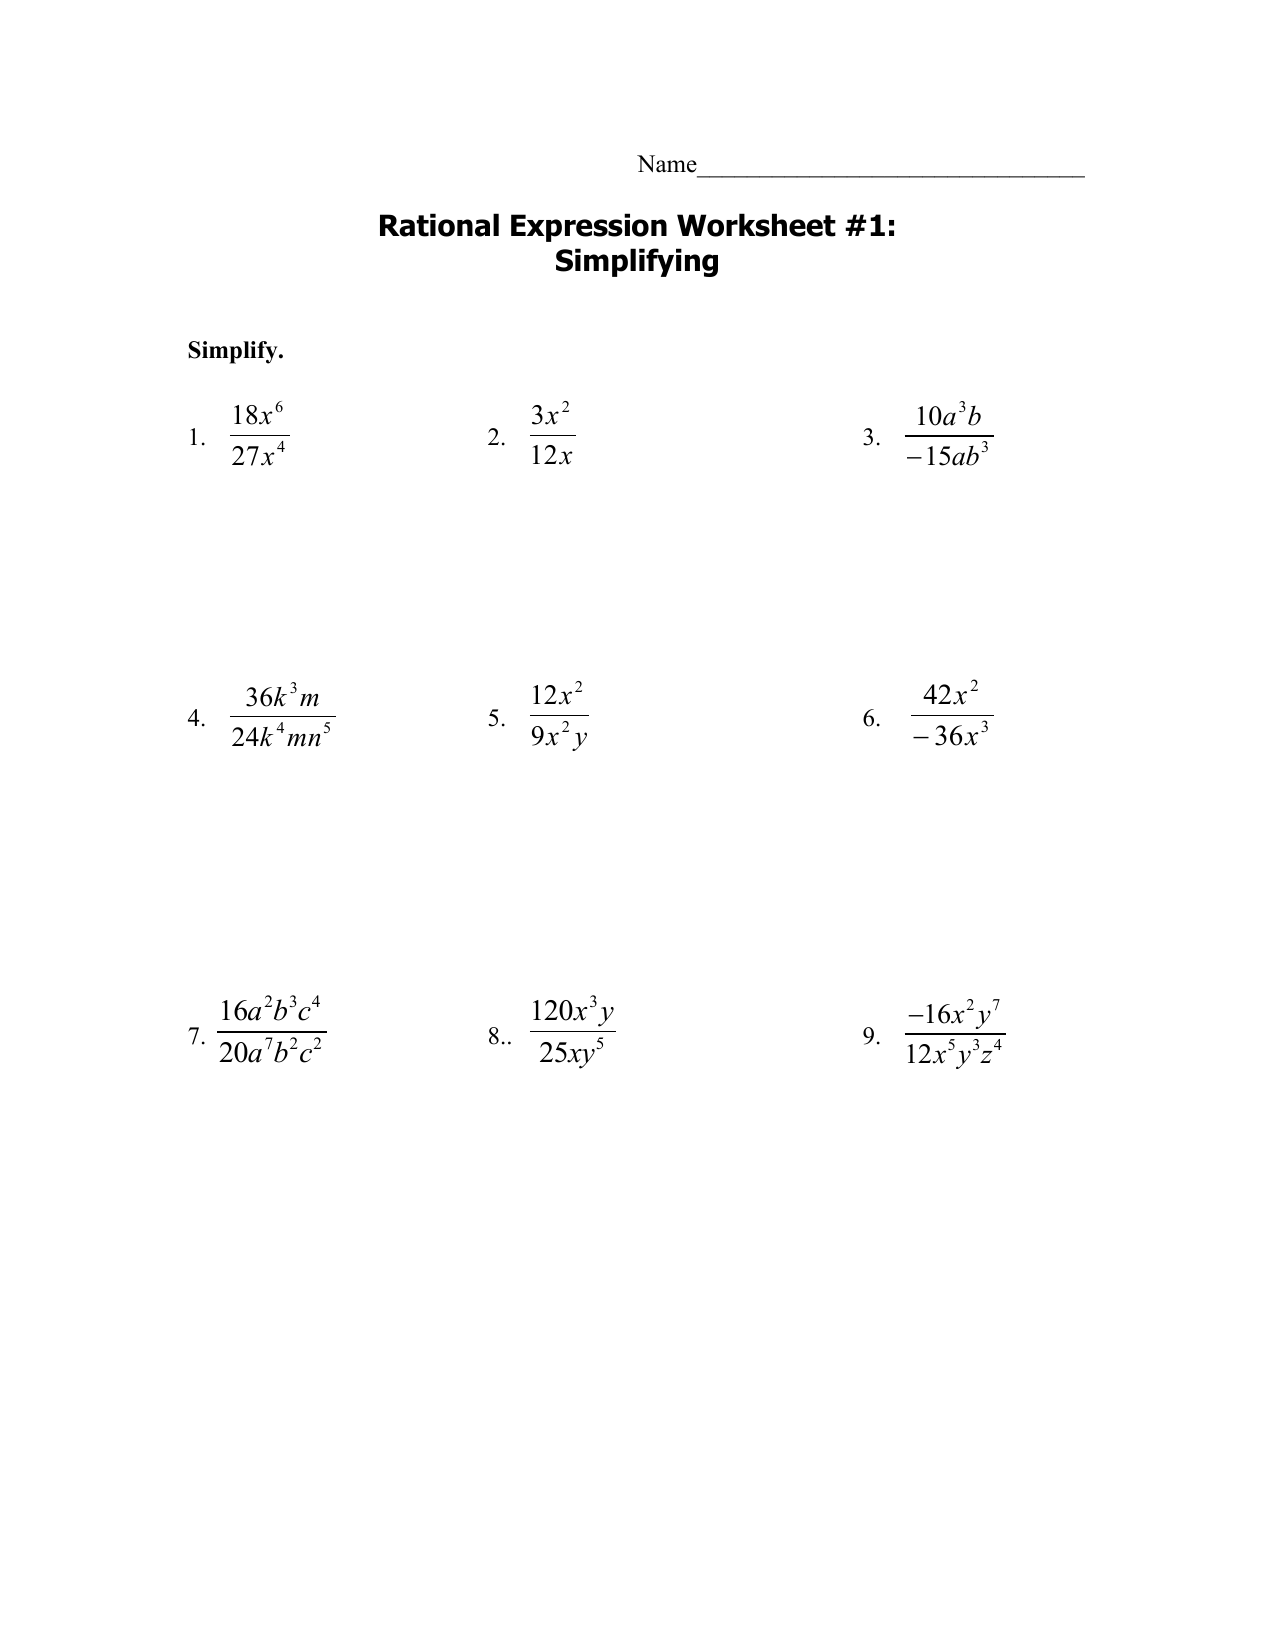 M24 rationalworksheets24-245 24 Inside Multiply Rational Expressions Worksheet